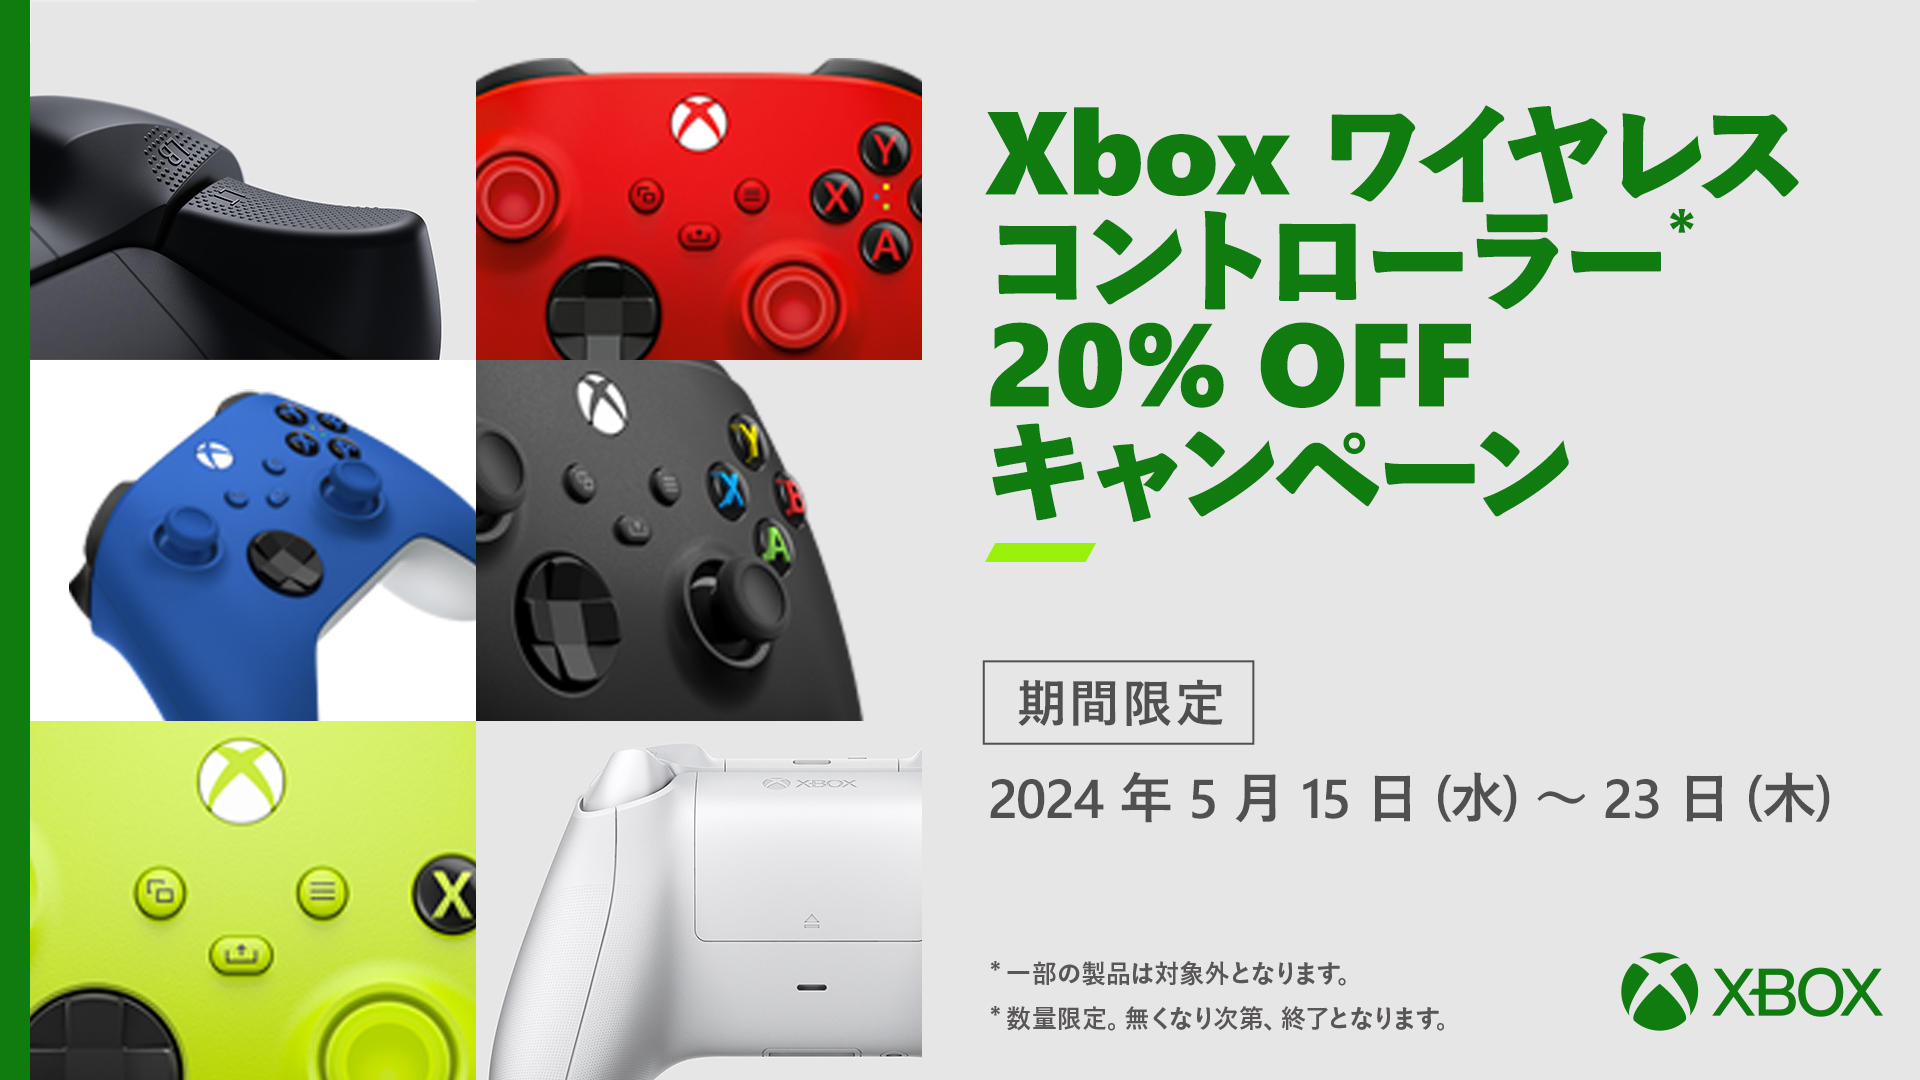 Xbox ワイヤレス コントローラー 対象製品 20% オフ キャンペーンを 5 月 15 日 (水) より開始